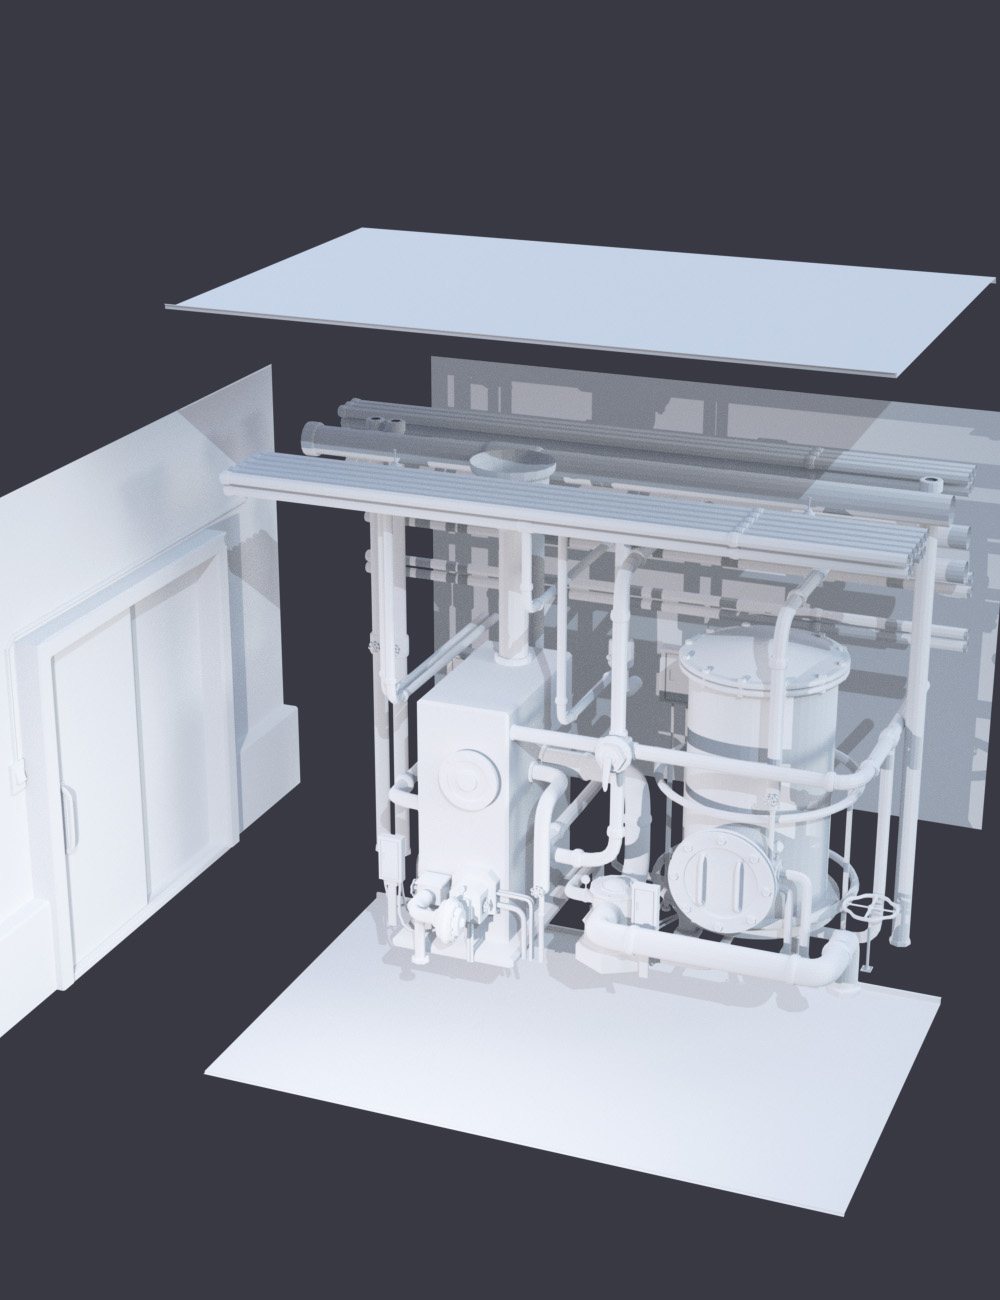 Boiler Room by: tentman, 3D Models by Daz 3D